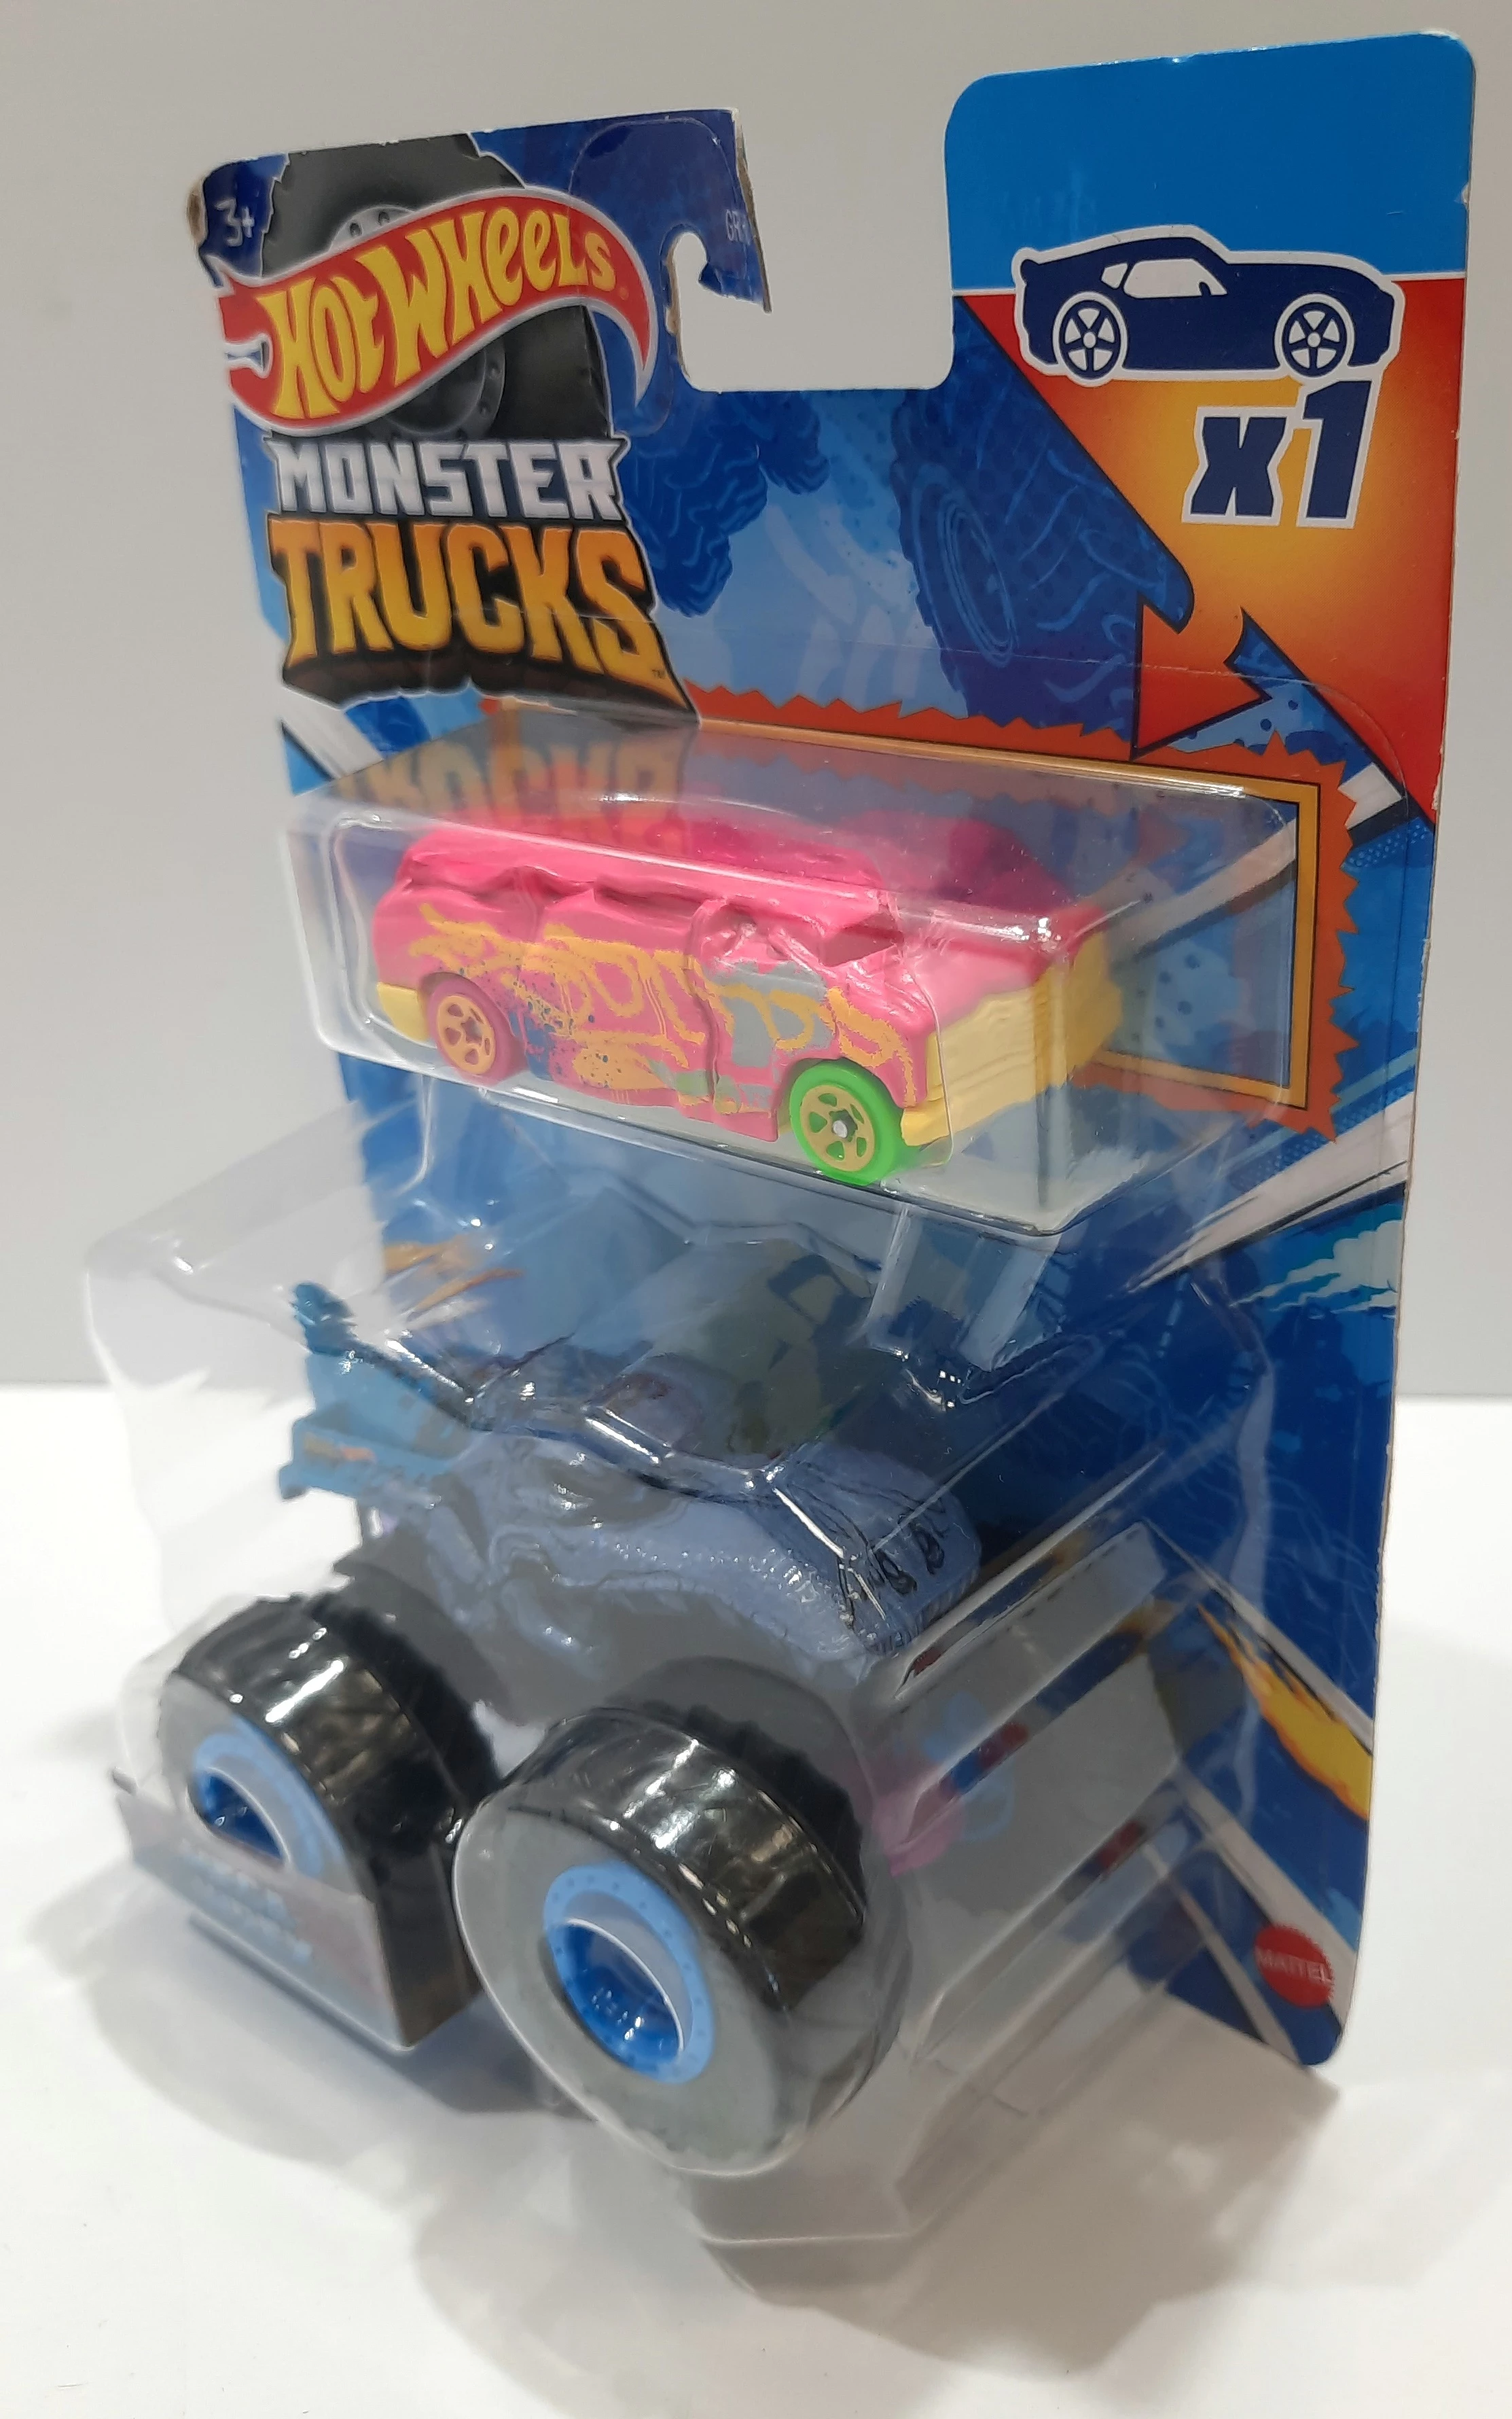 Pista Hot Wheels Mega Wrex - Monster Trucks Caixa De Choques - Alfabay -  Cubo Mágico - Quebra Cabeças - A loja de Profissionais e Colecionadores!